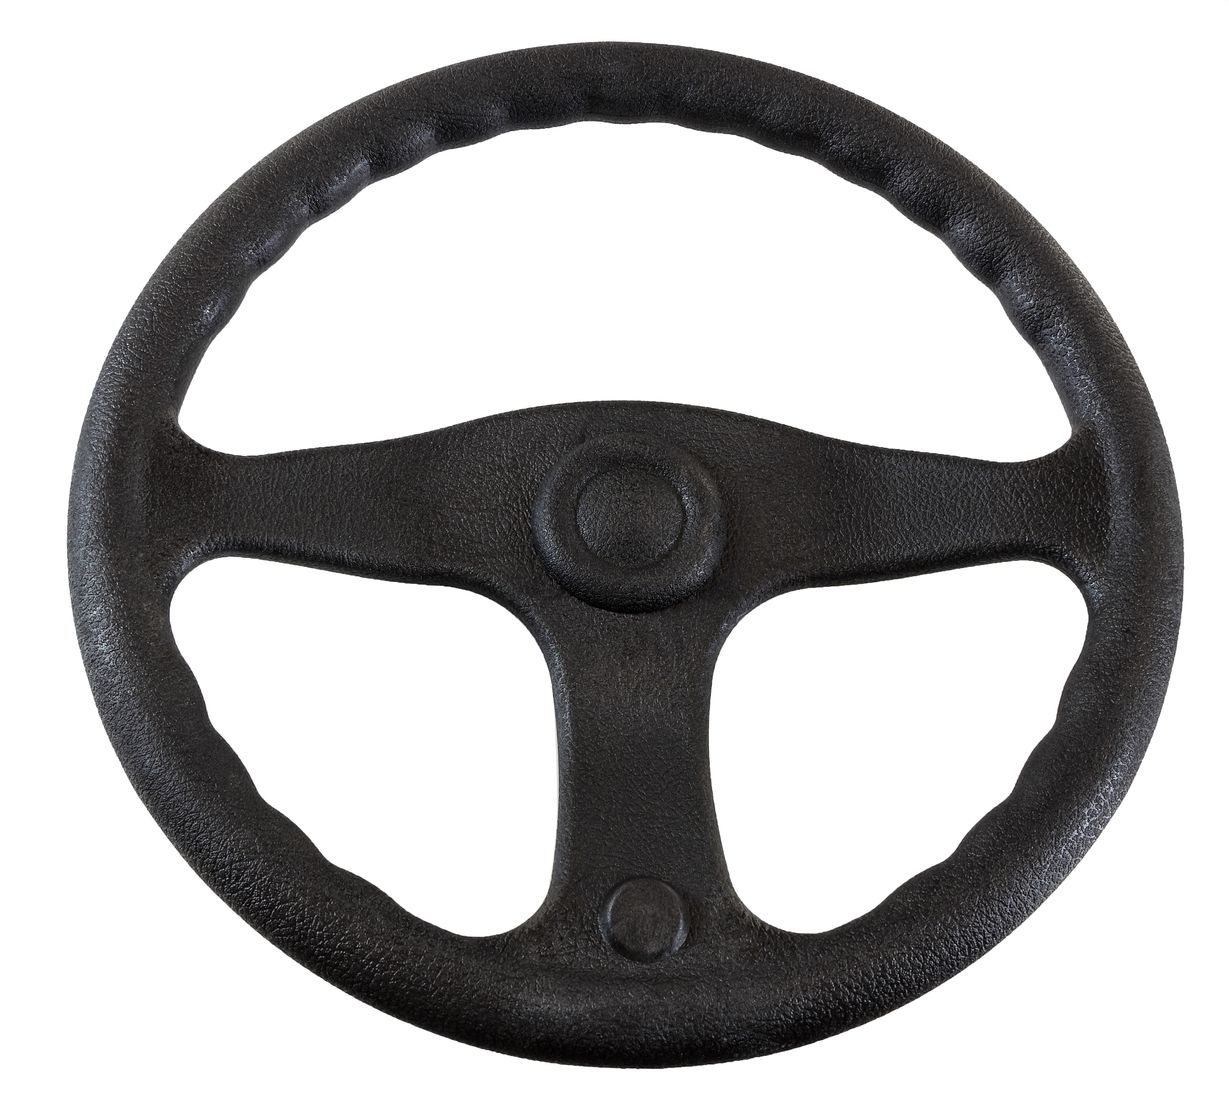 Рулевое колесо E.Chance, обод и спицы черные д. 330 мм D33_EC рулевое колесо tavolara b s tavolarabs